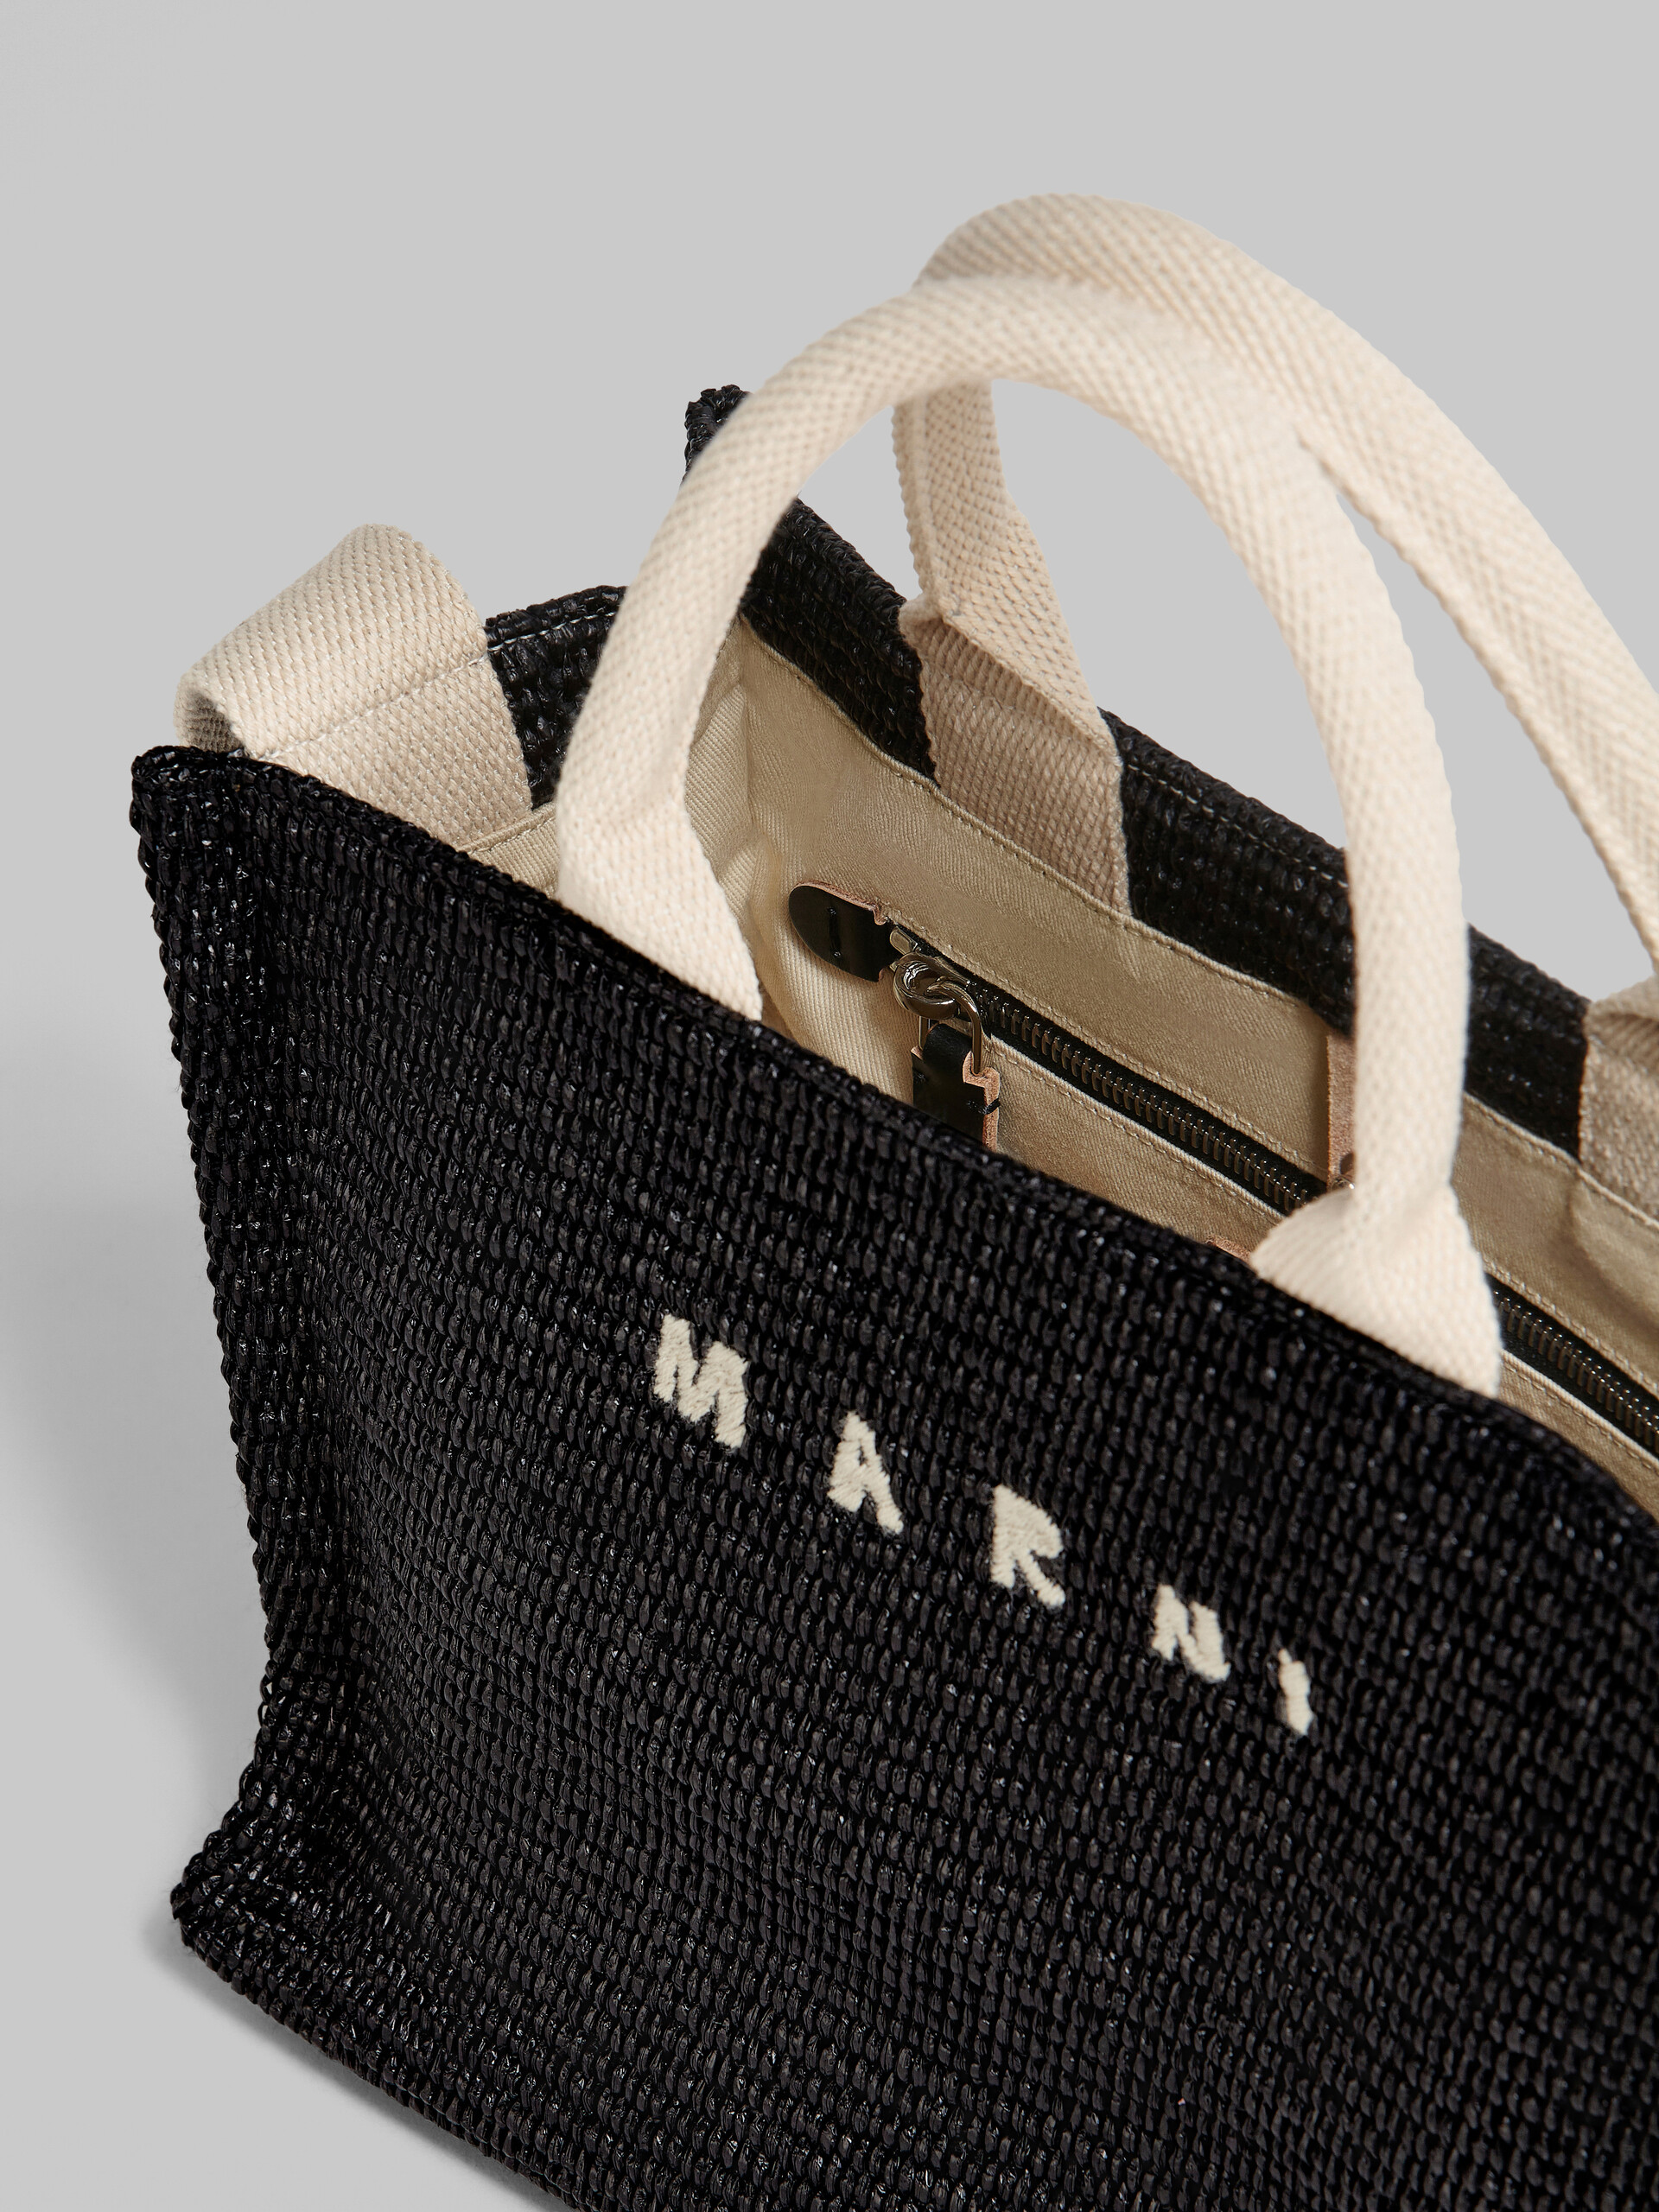 Black raffia Small Tote Bag - Shopping Bags - Image 4